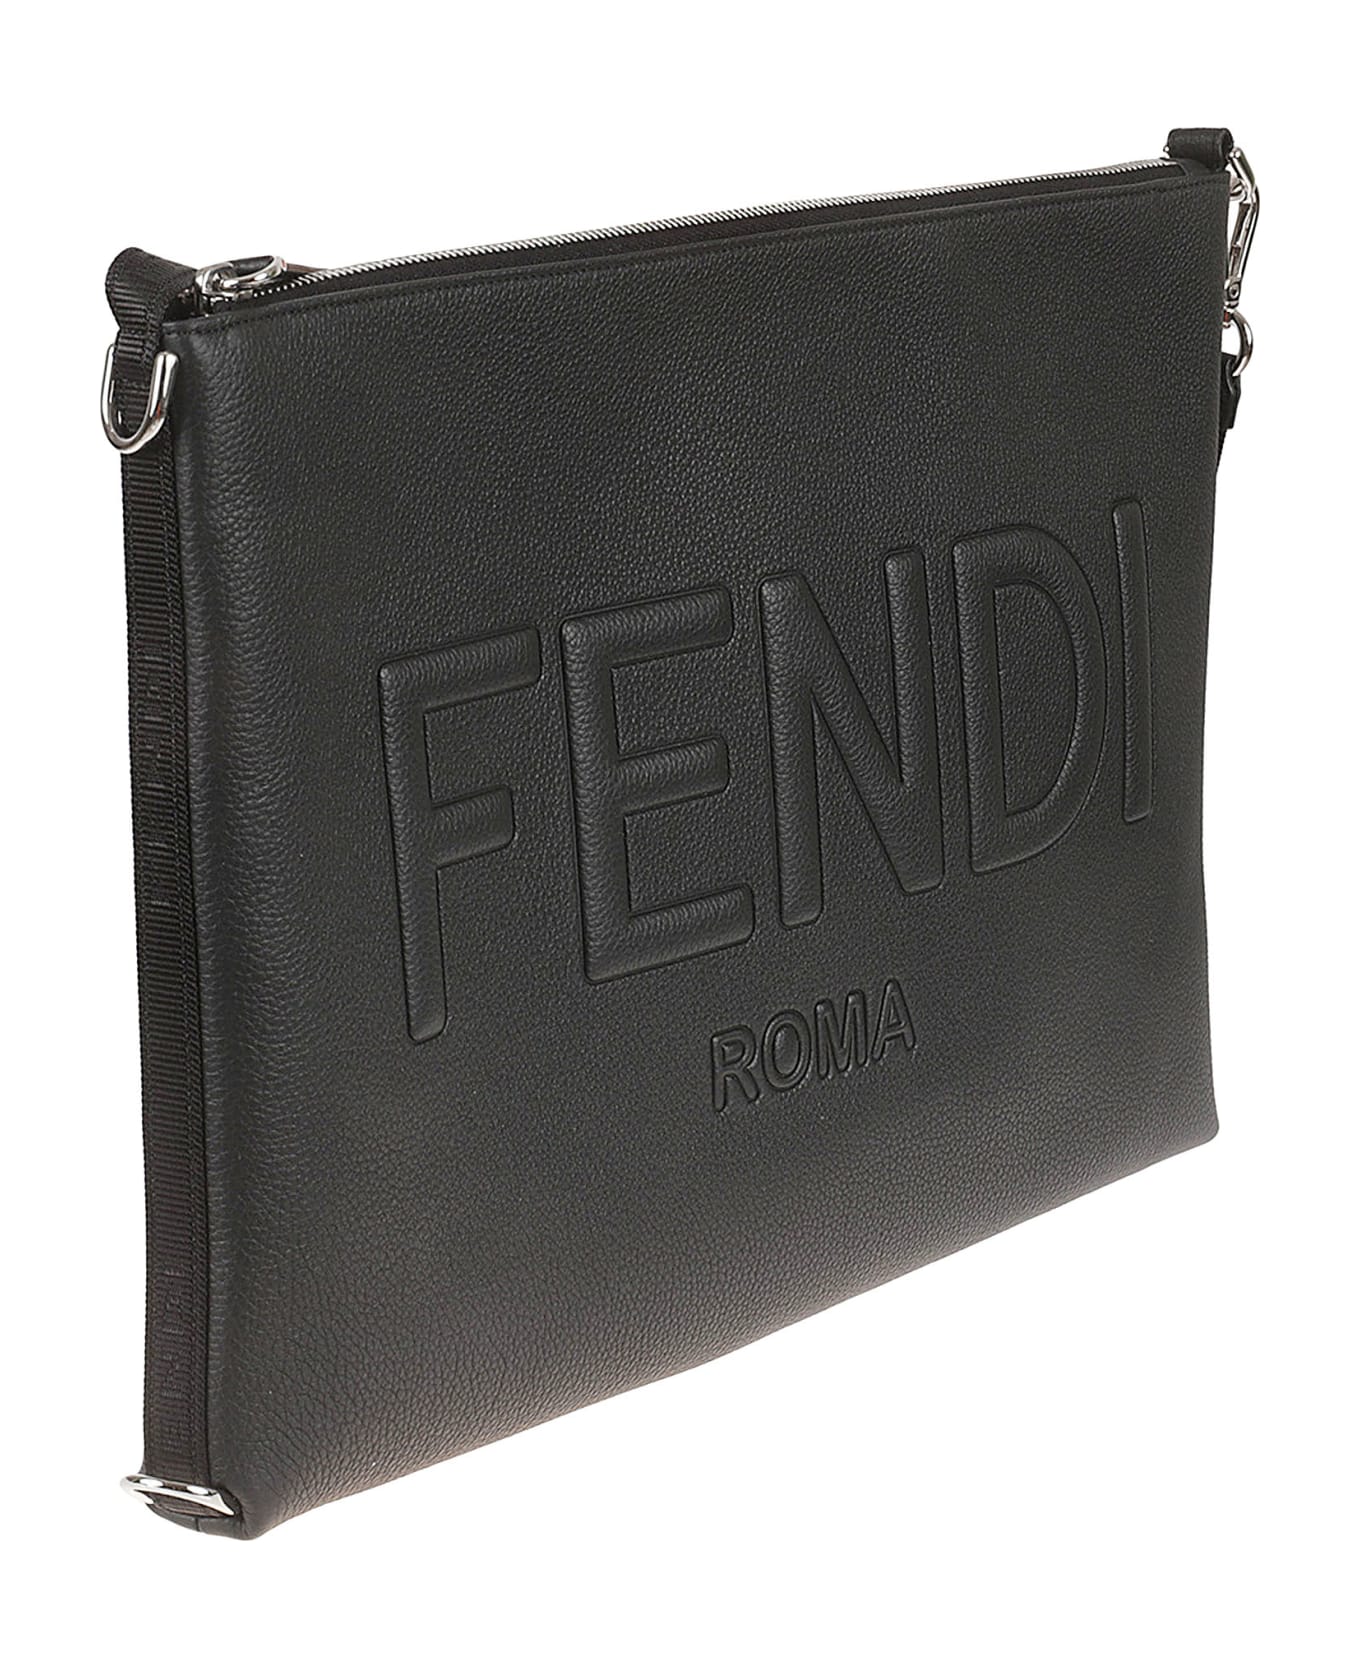 Fendi Logo Embossed Top Zip Clutch - Black/Palladio